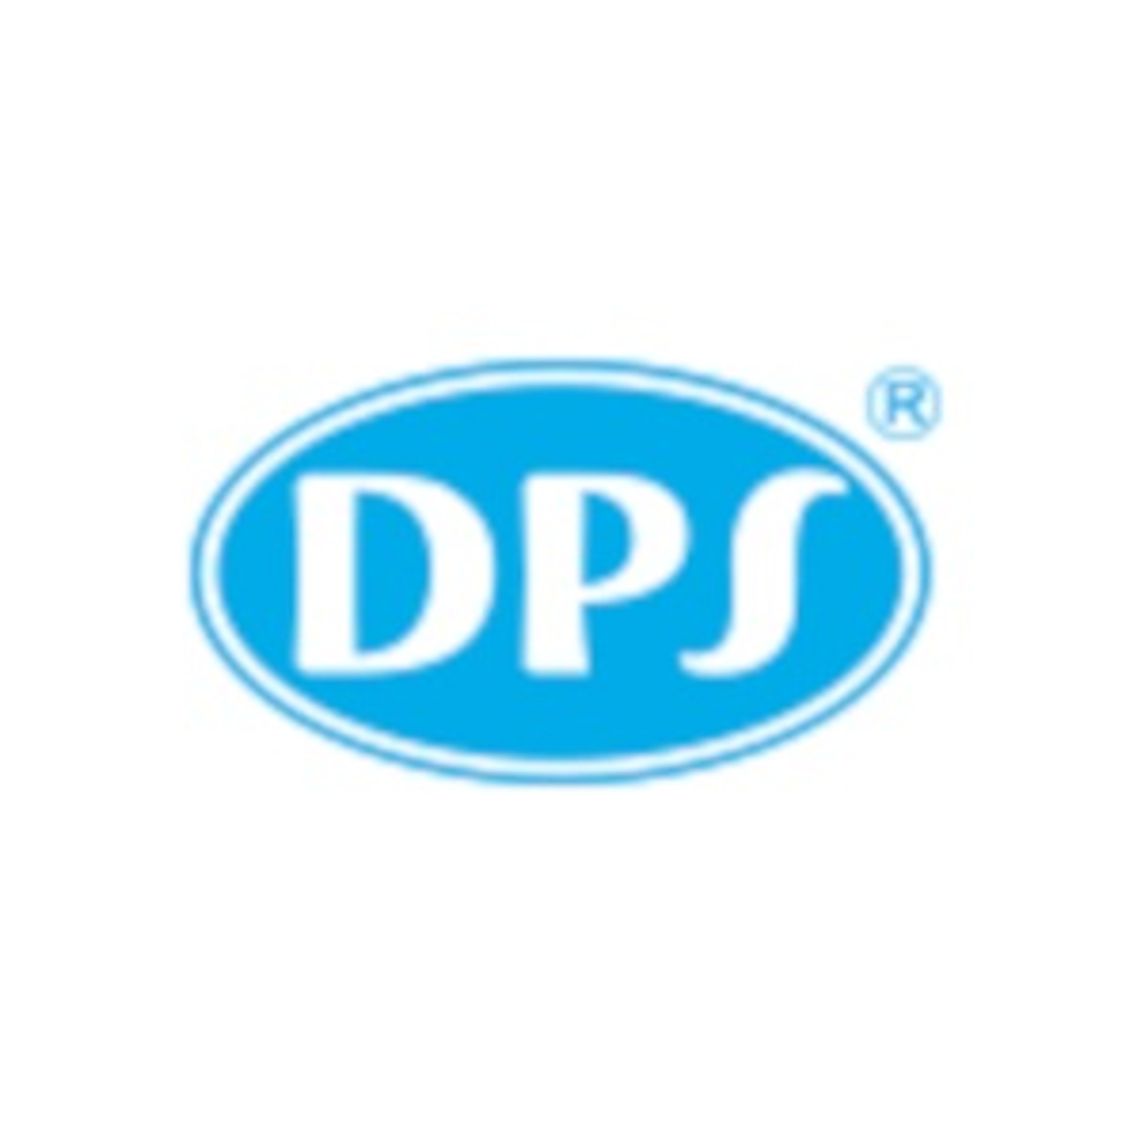 Producent wyjątkowych sufitów - Grupa DPS